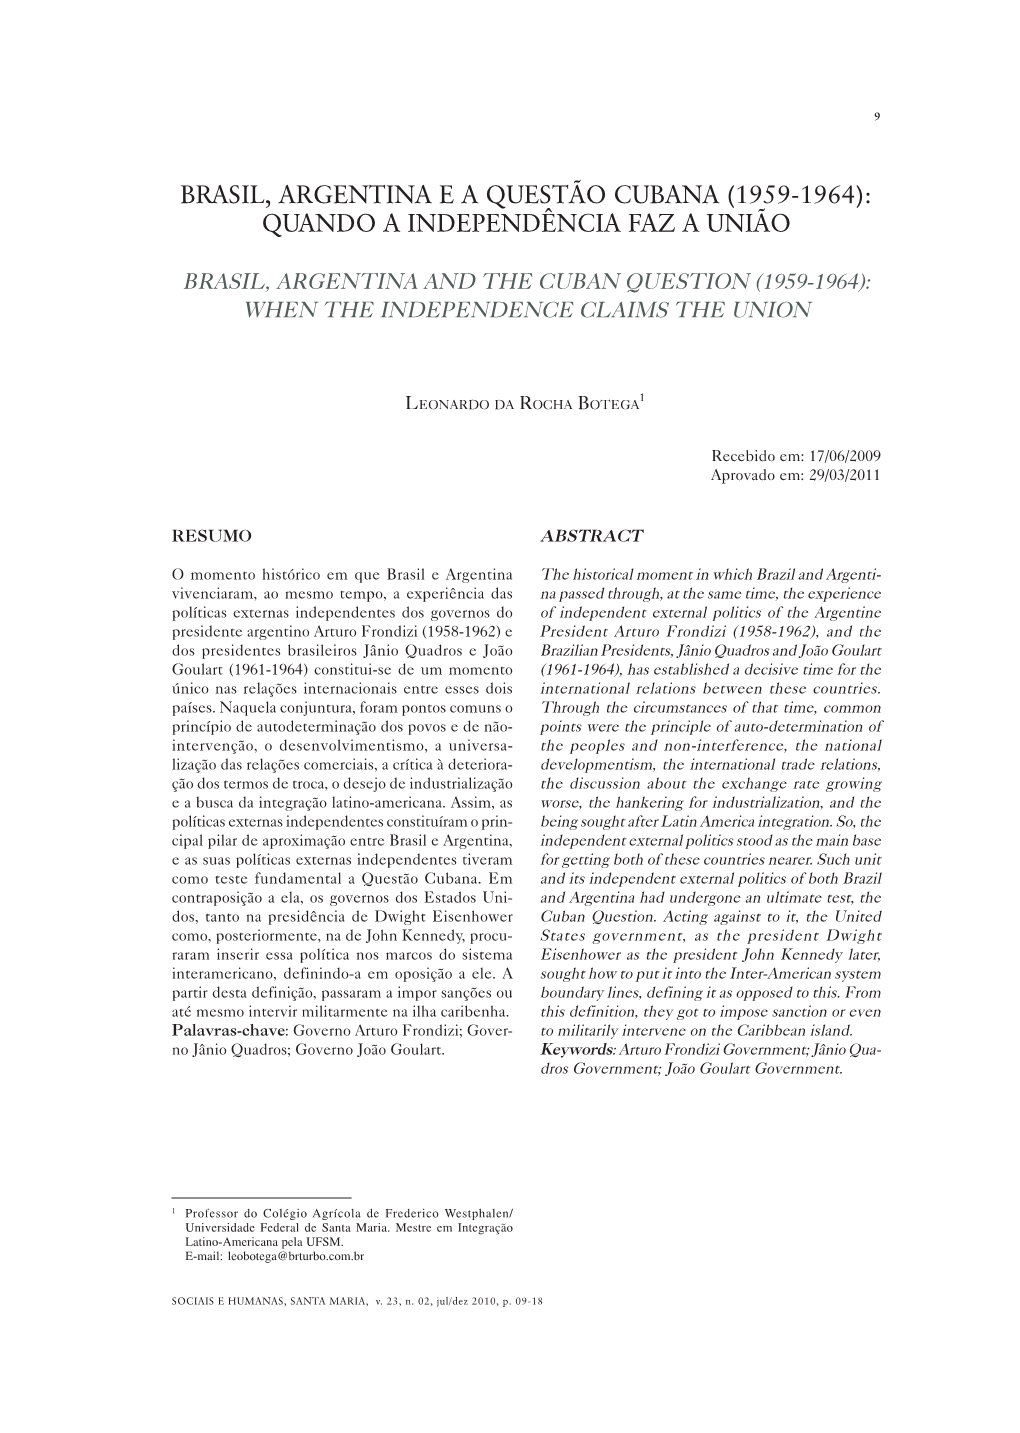 Brasil, Argentina E a Questão Cubana (1959-1964): Quando a Independência Faz a União